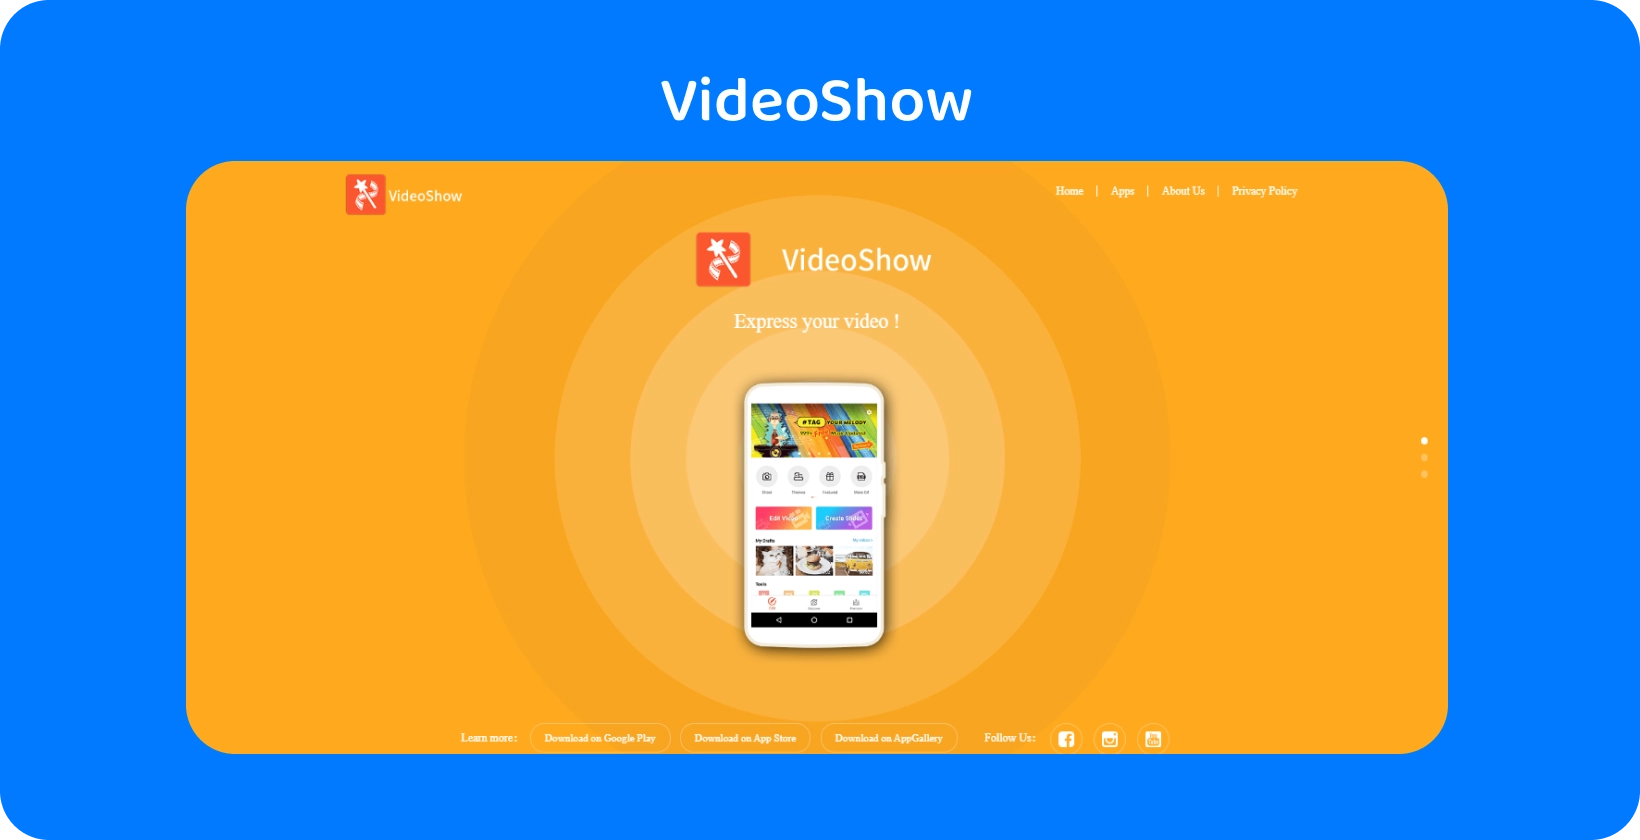 屏幕上的 VideoShow 应用程序界面，在充满活力的橙色背景上提供简单的视频编辑工具和功能。